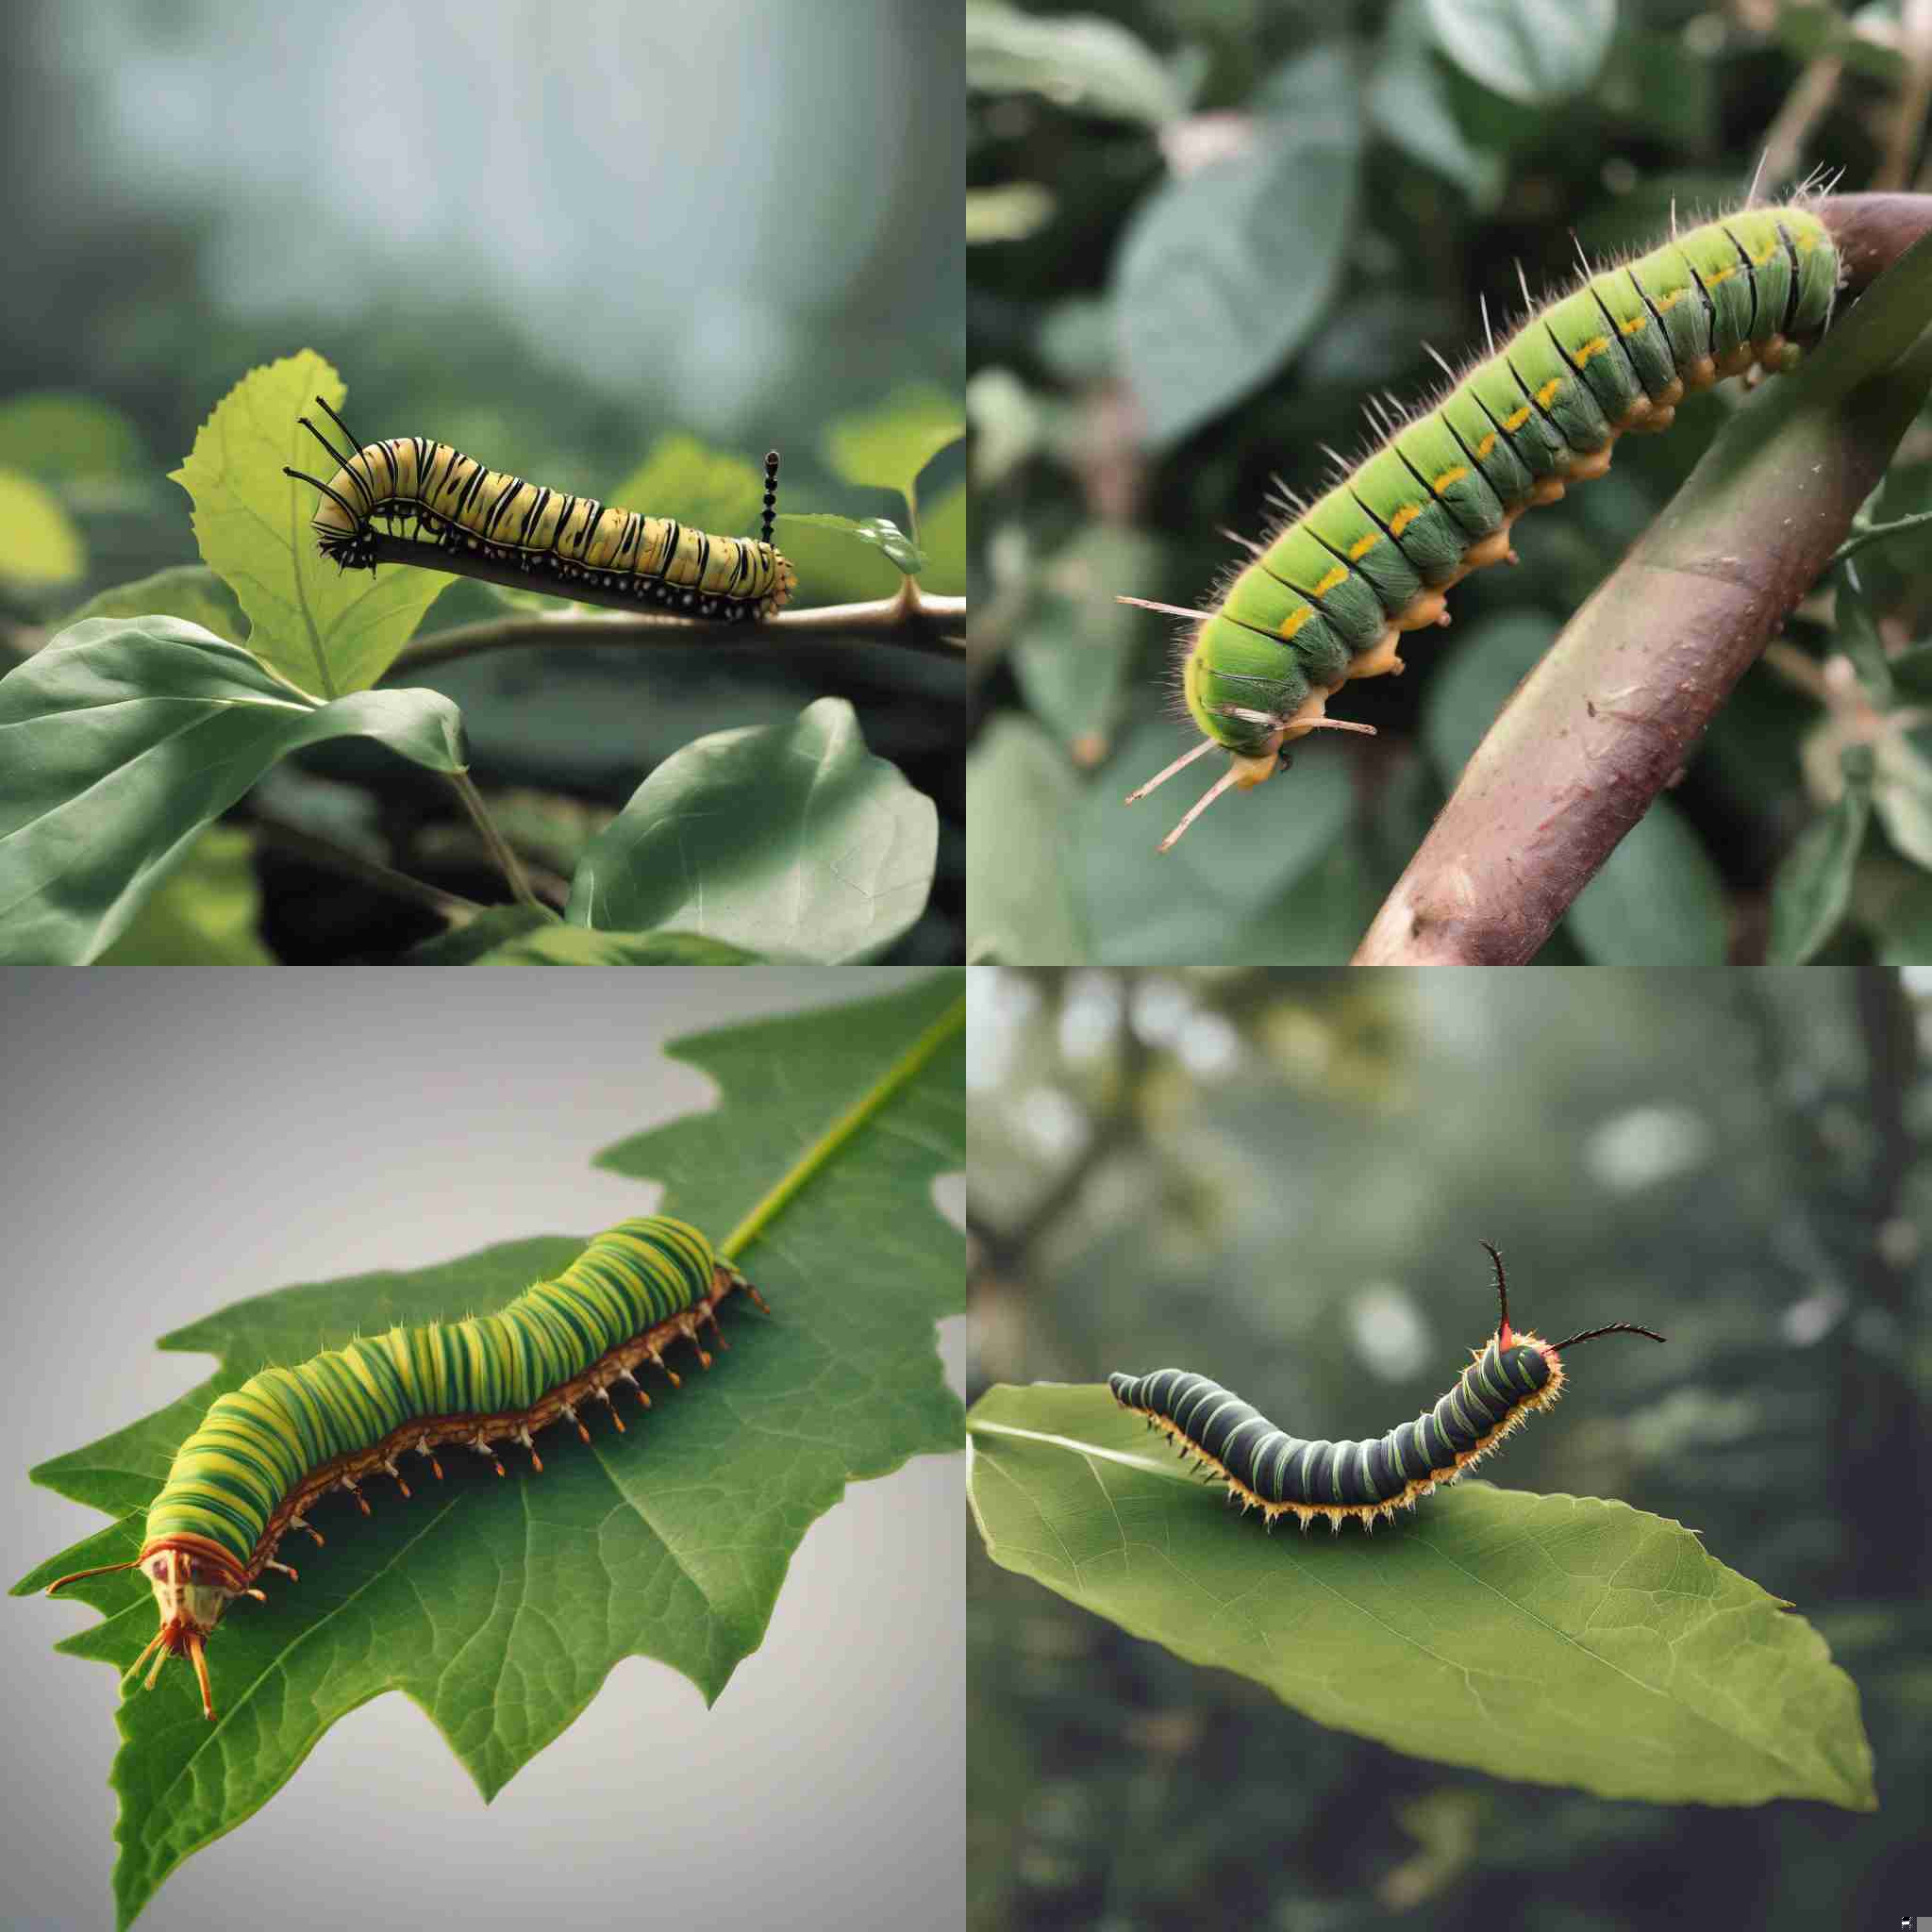 A caterpillar after metamorphosis